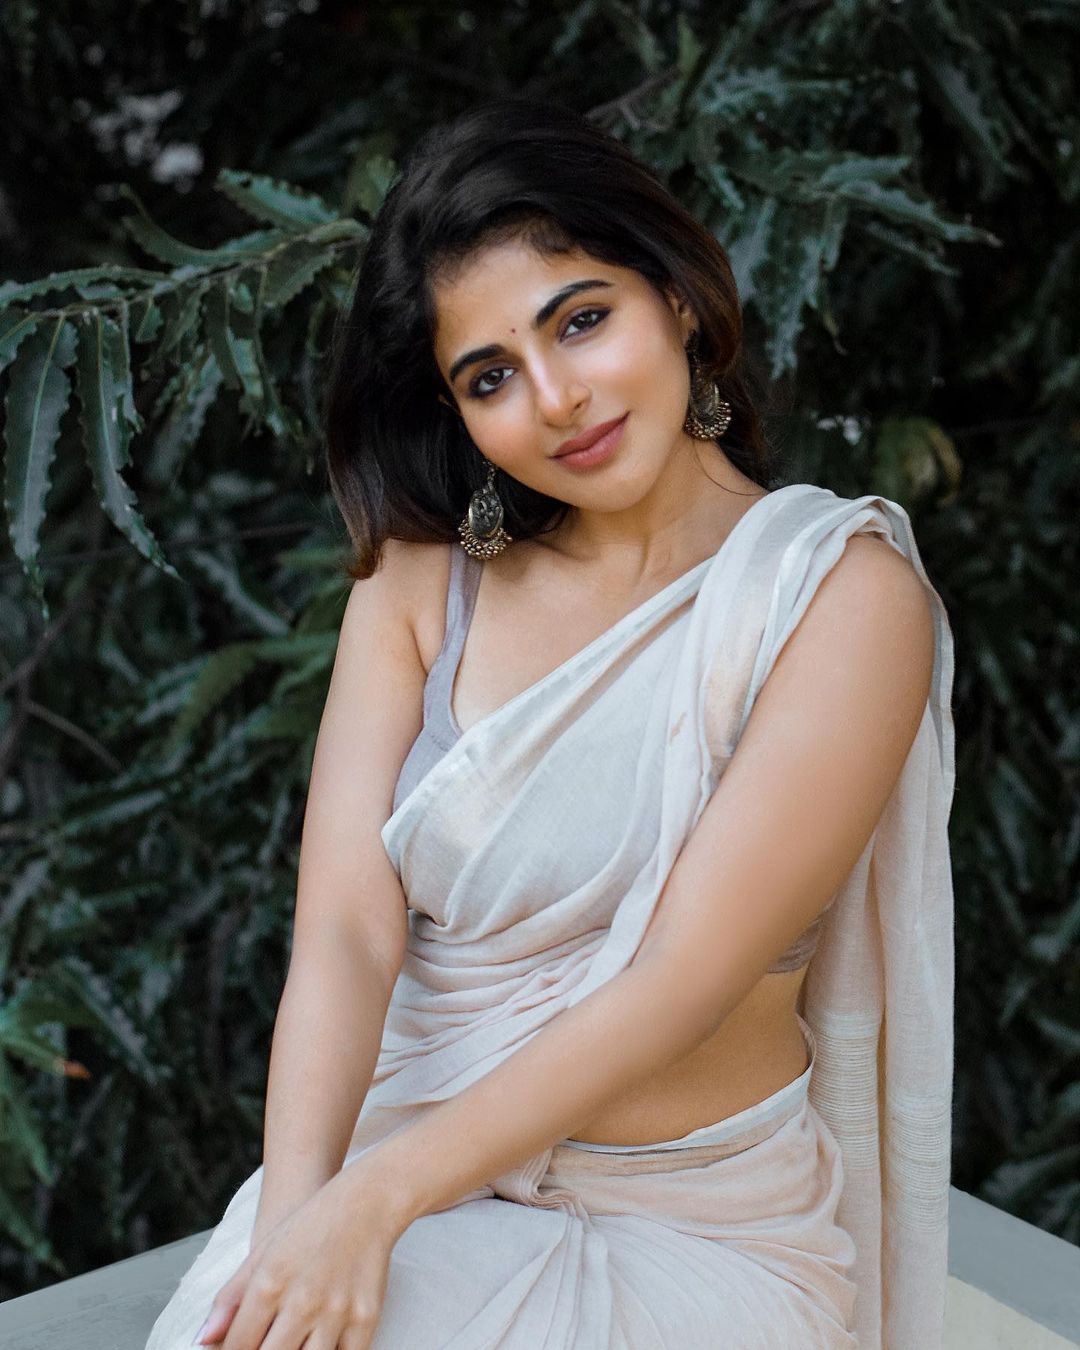 Iswarya menon hot photos in white transparent saree showing hip